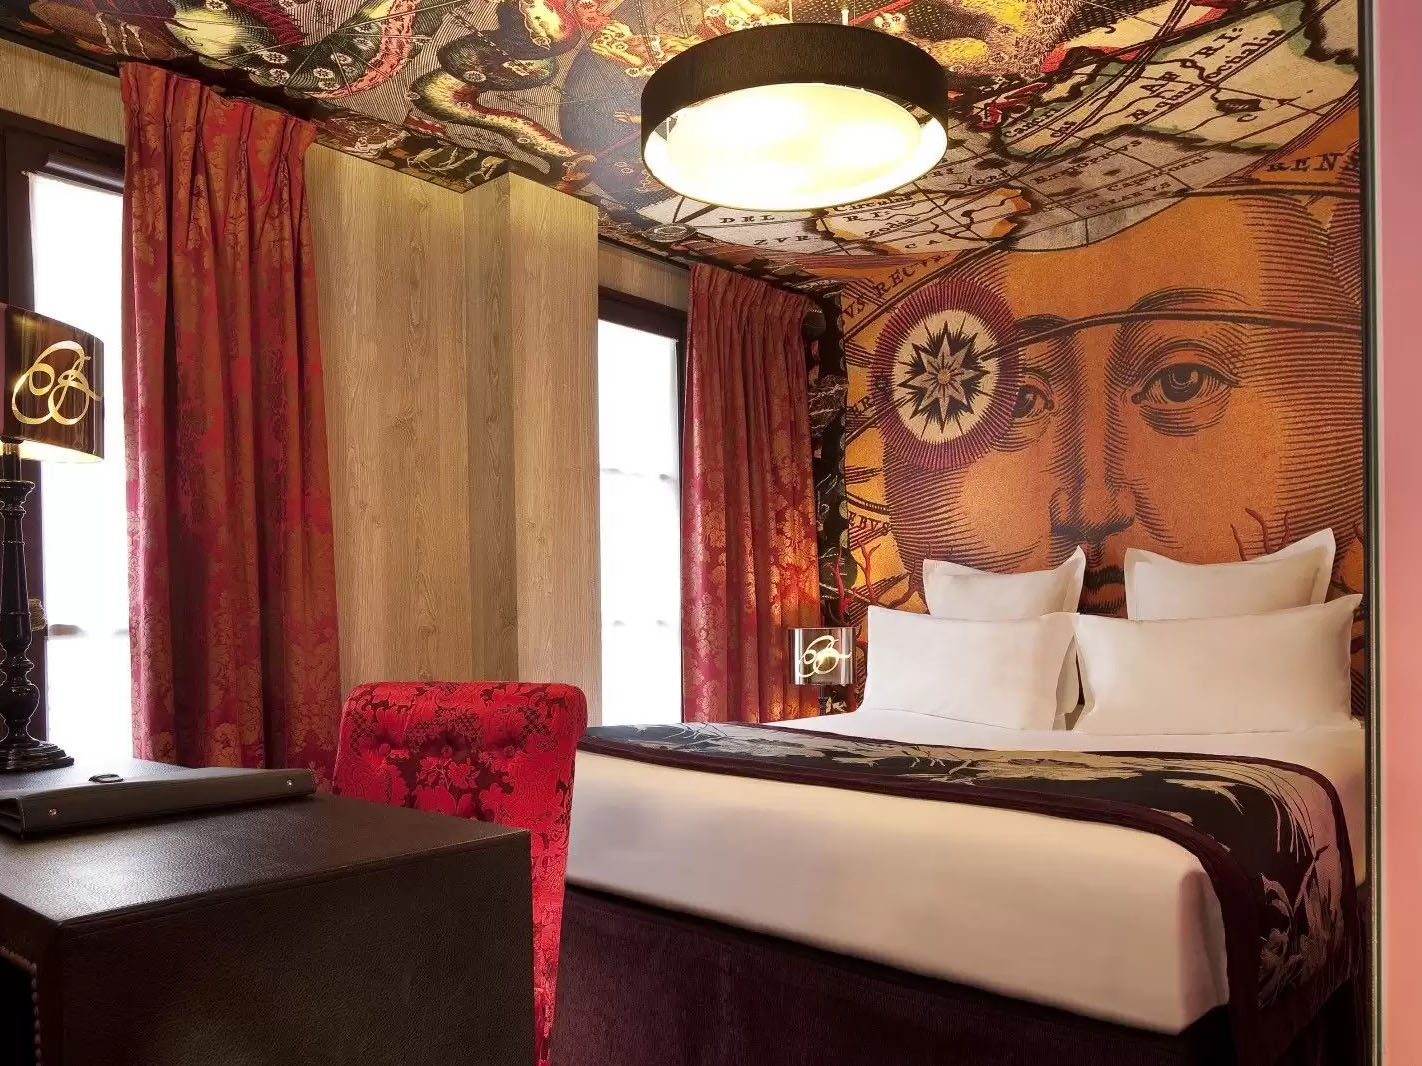 Best hotels in France - Hotel Le Bellechasse Saint-Germain, Paris